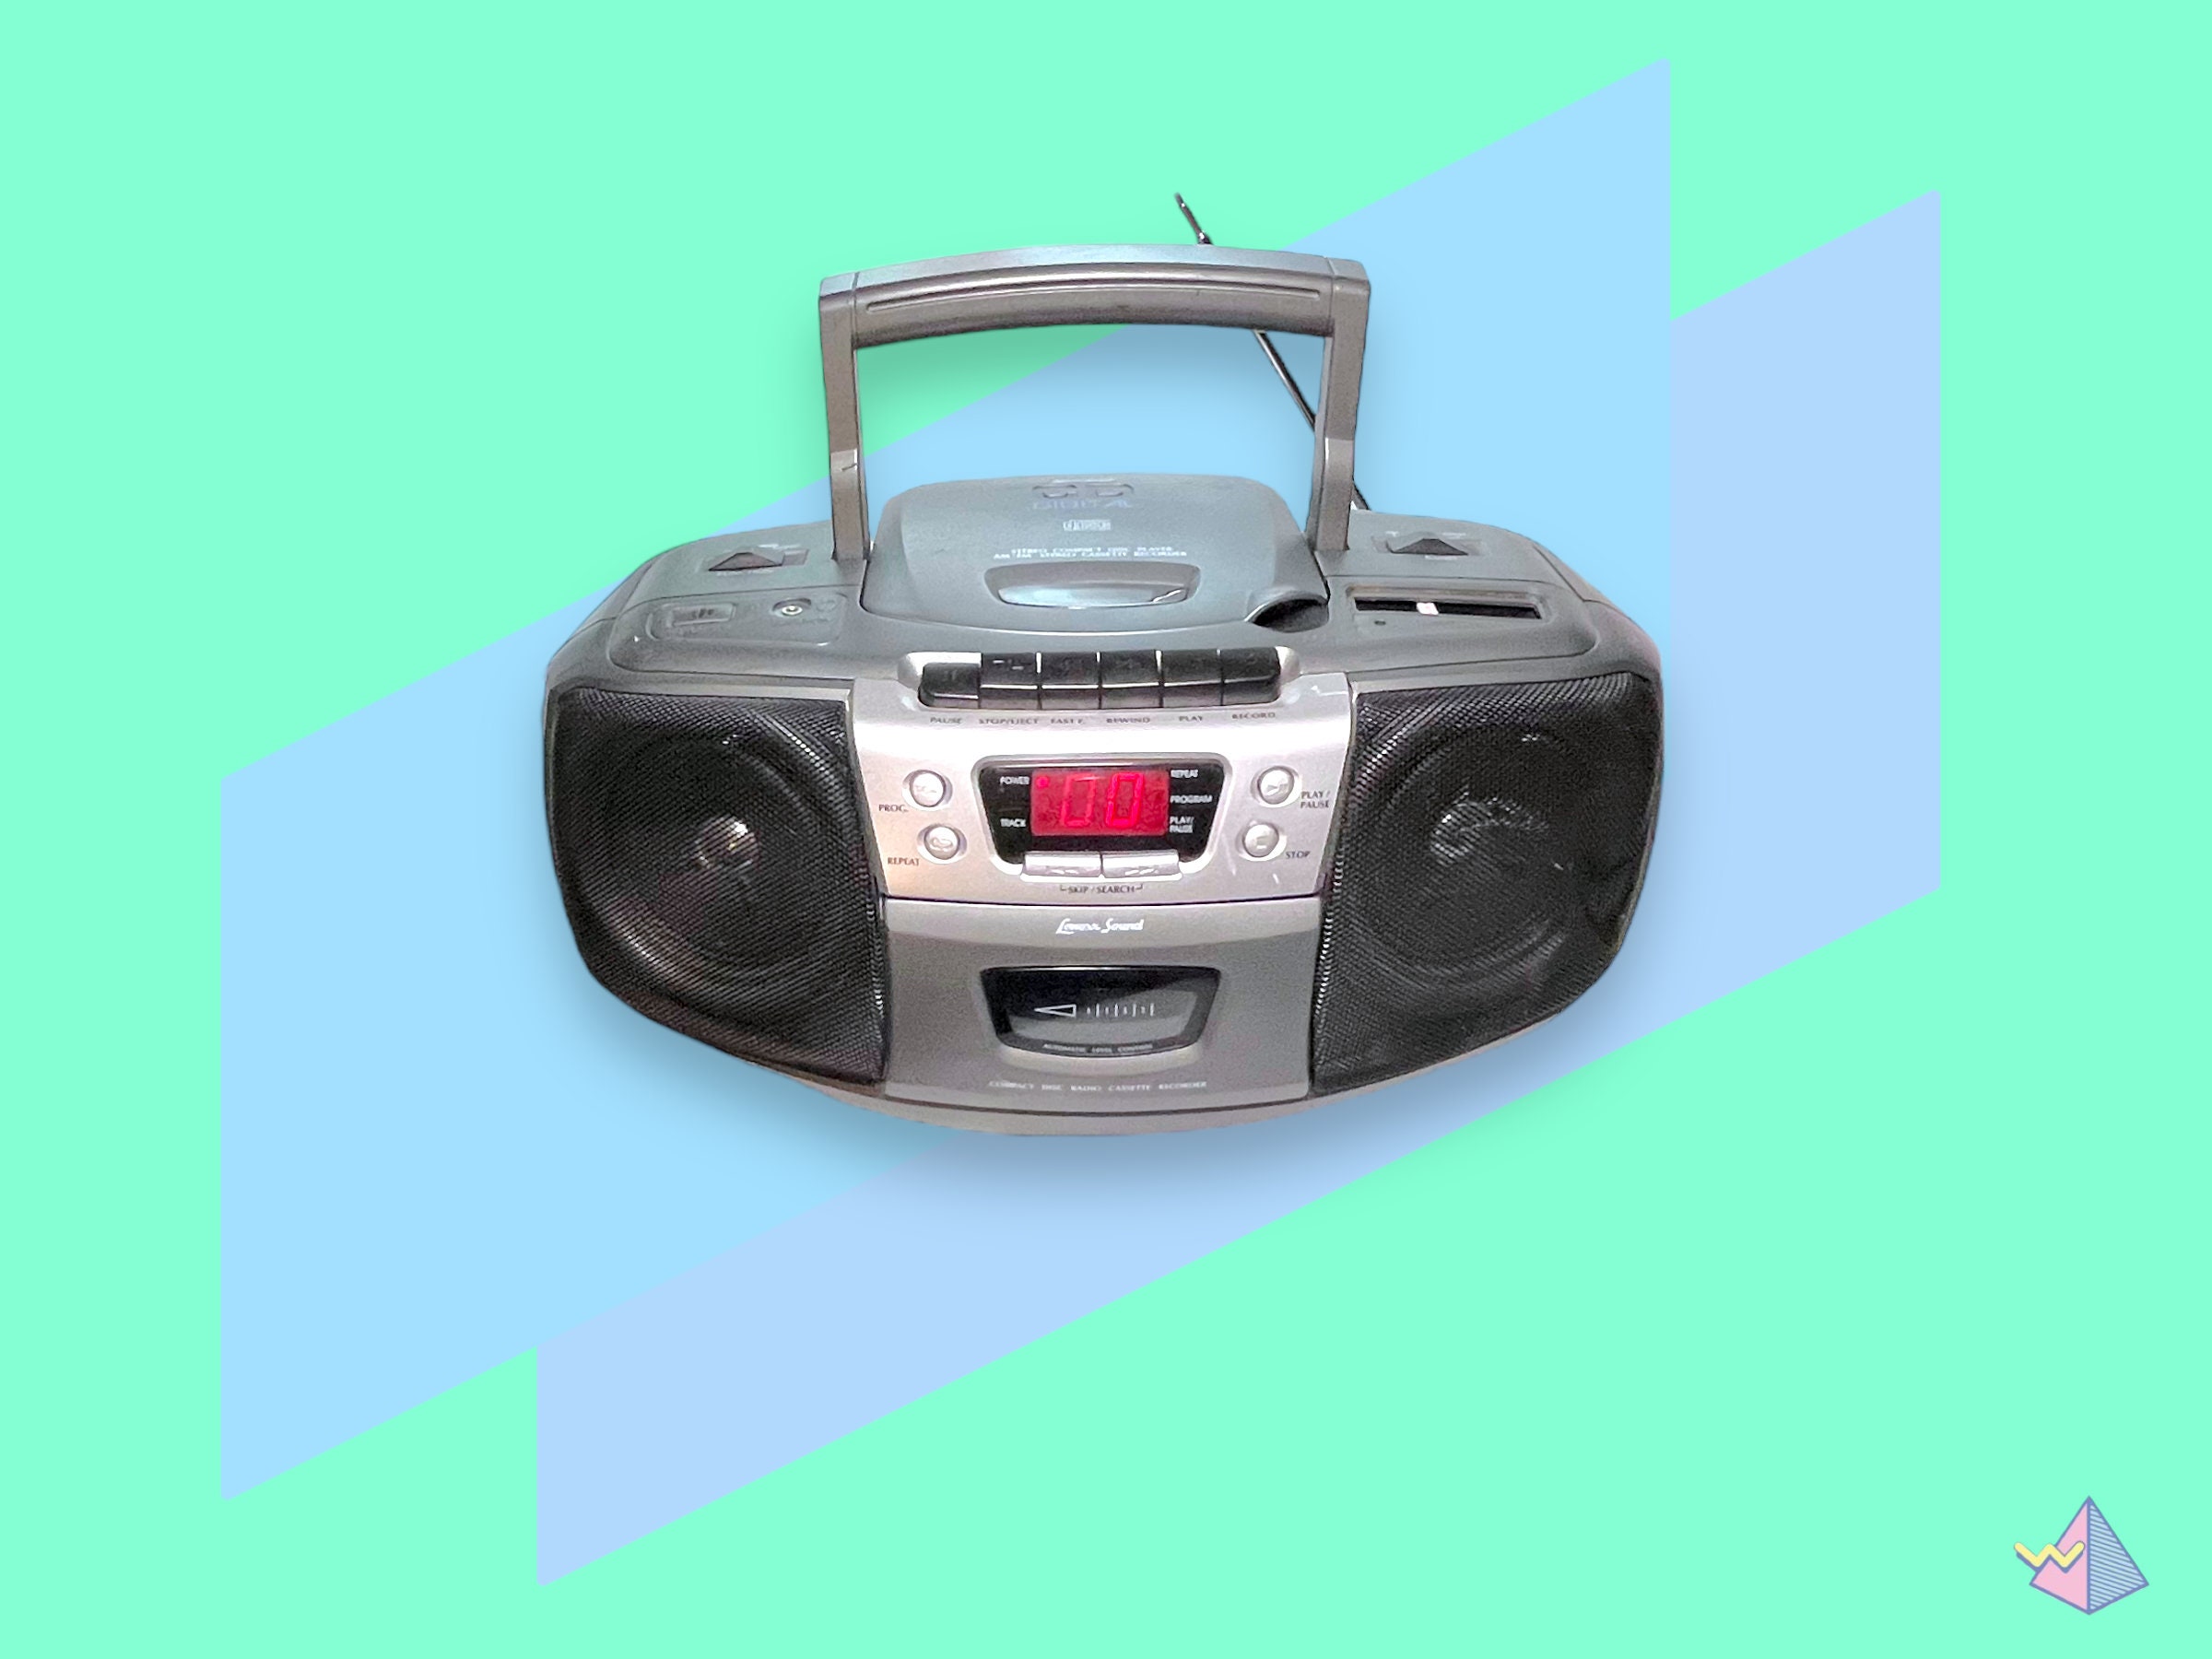 Sony ICF-C112 Radio reloj AM/FM (descontinuado por el fabricante)